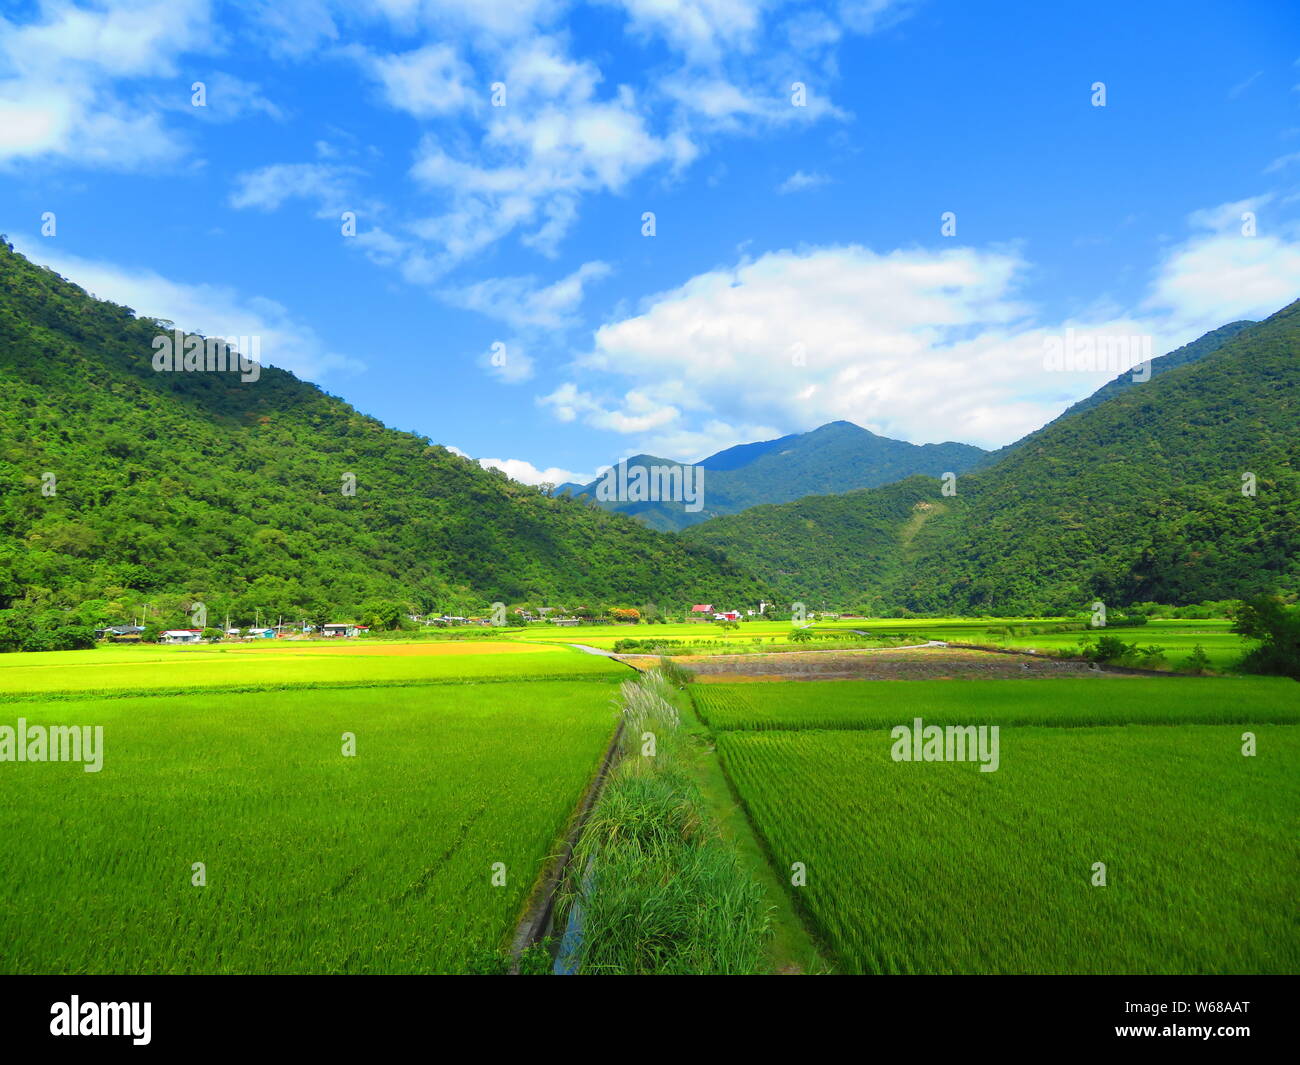 Verdi campi di riso nel sud est asiatico Foto Stock